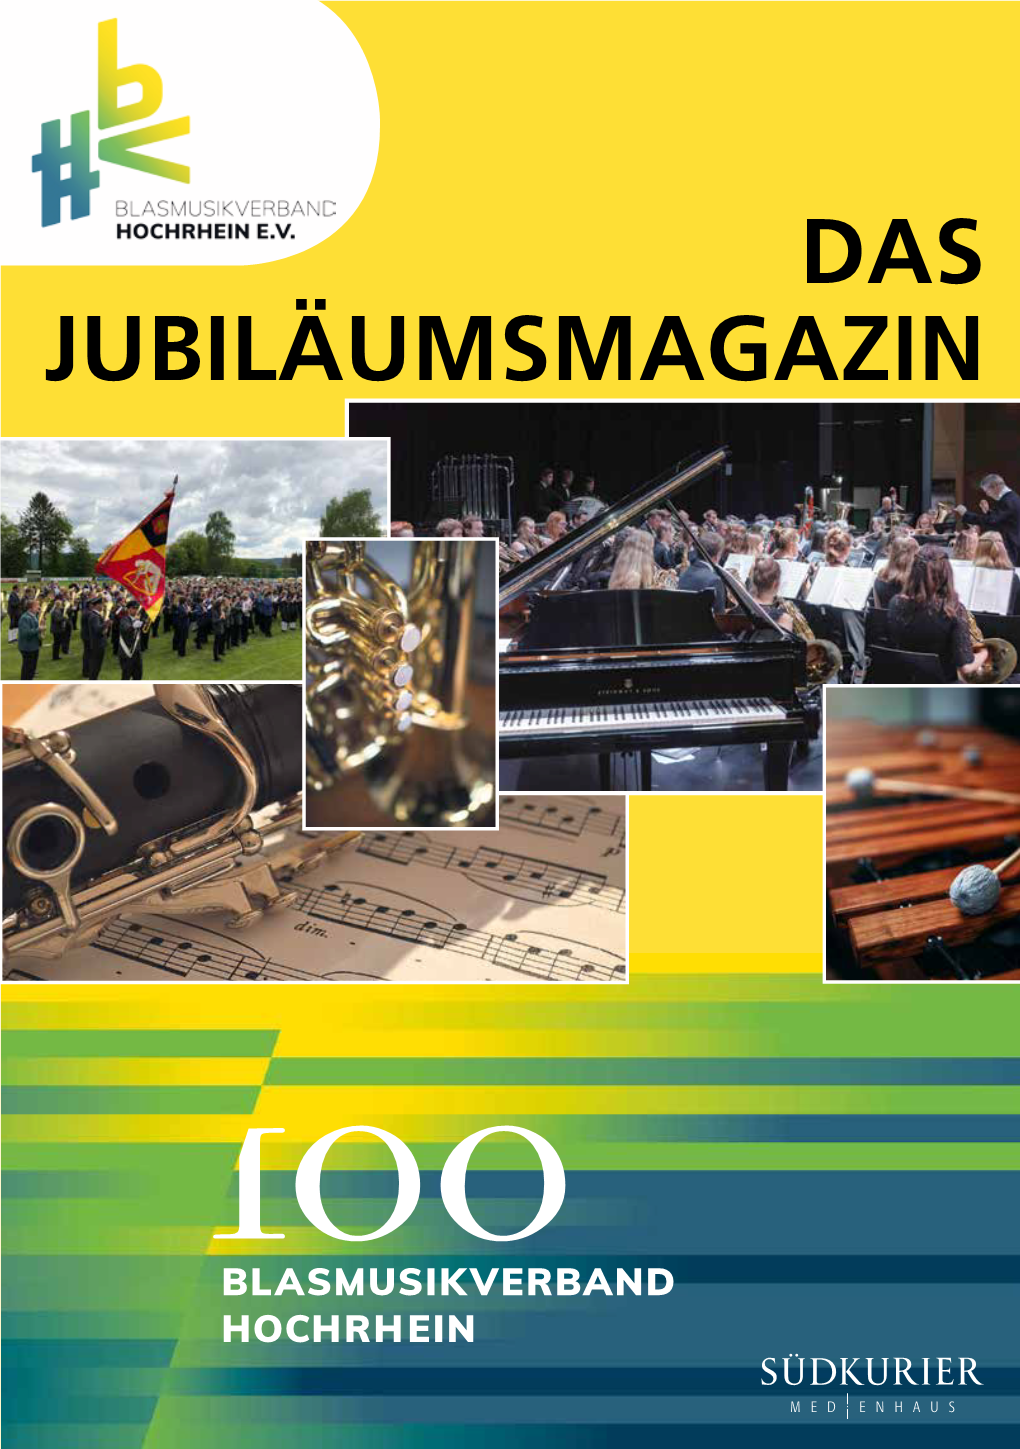 Das Jubiläumsmagazin 2 100Jahre Blasmusikverband Hochrheine.V